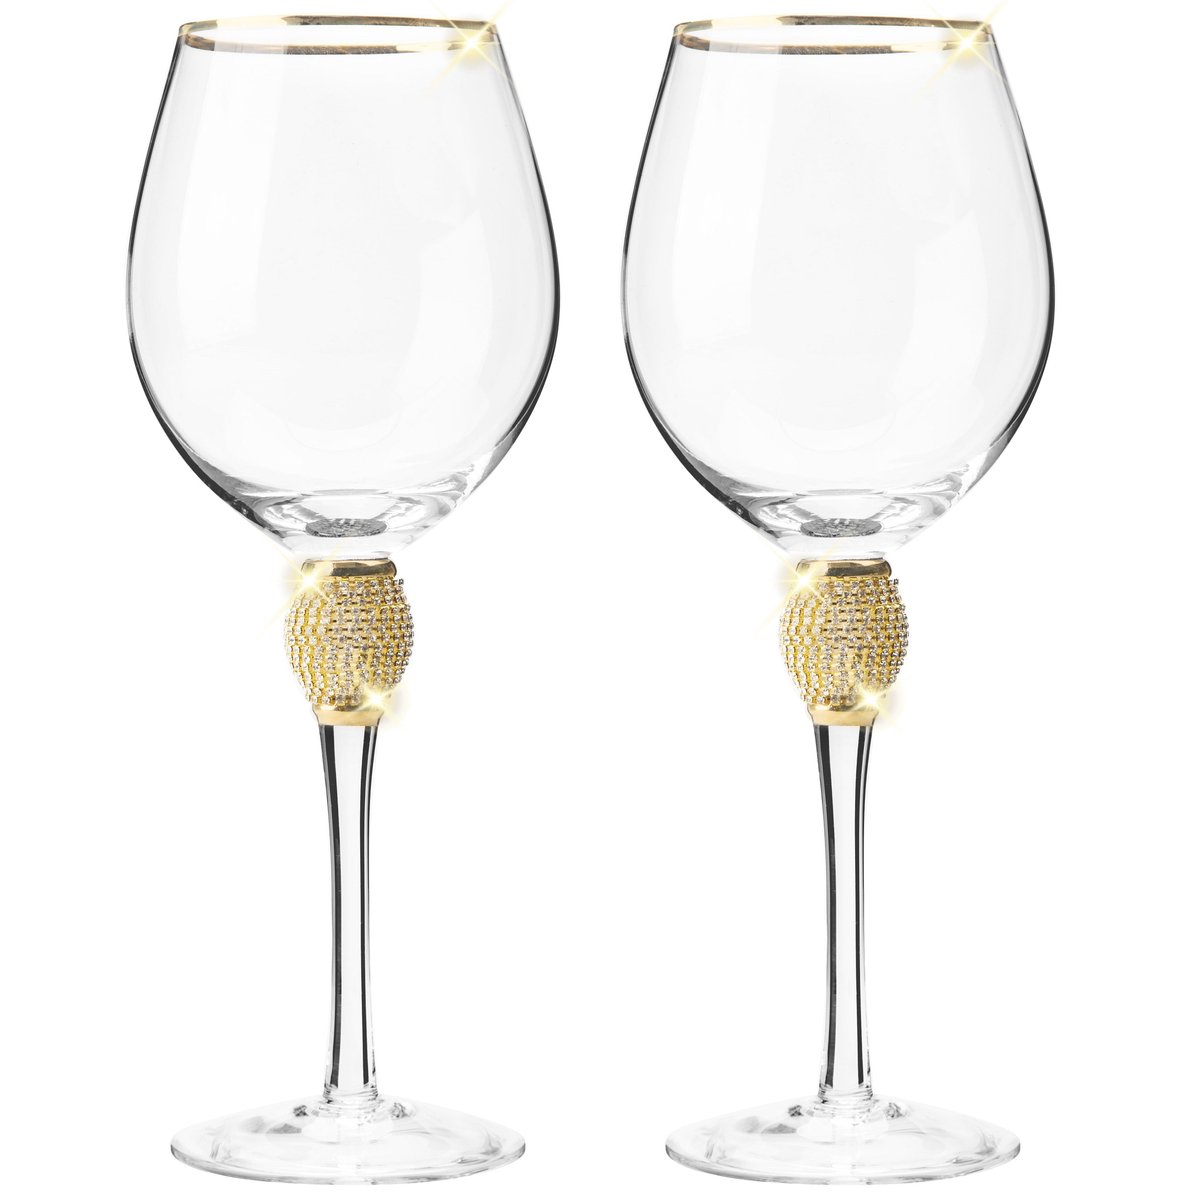 Rhinestone Stem Wine Glass 